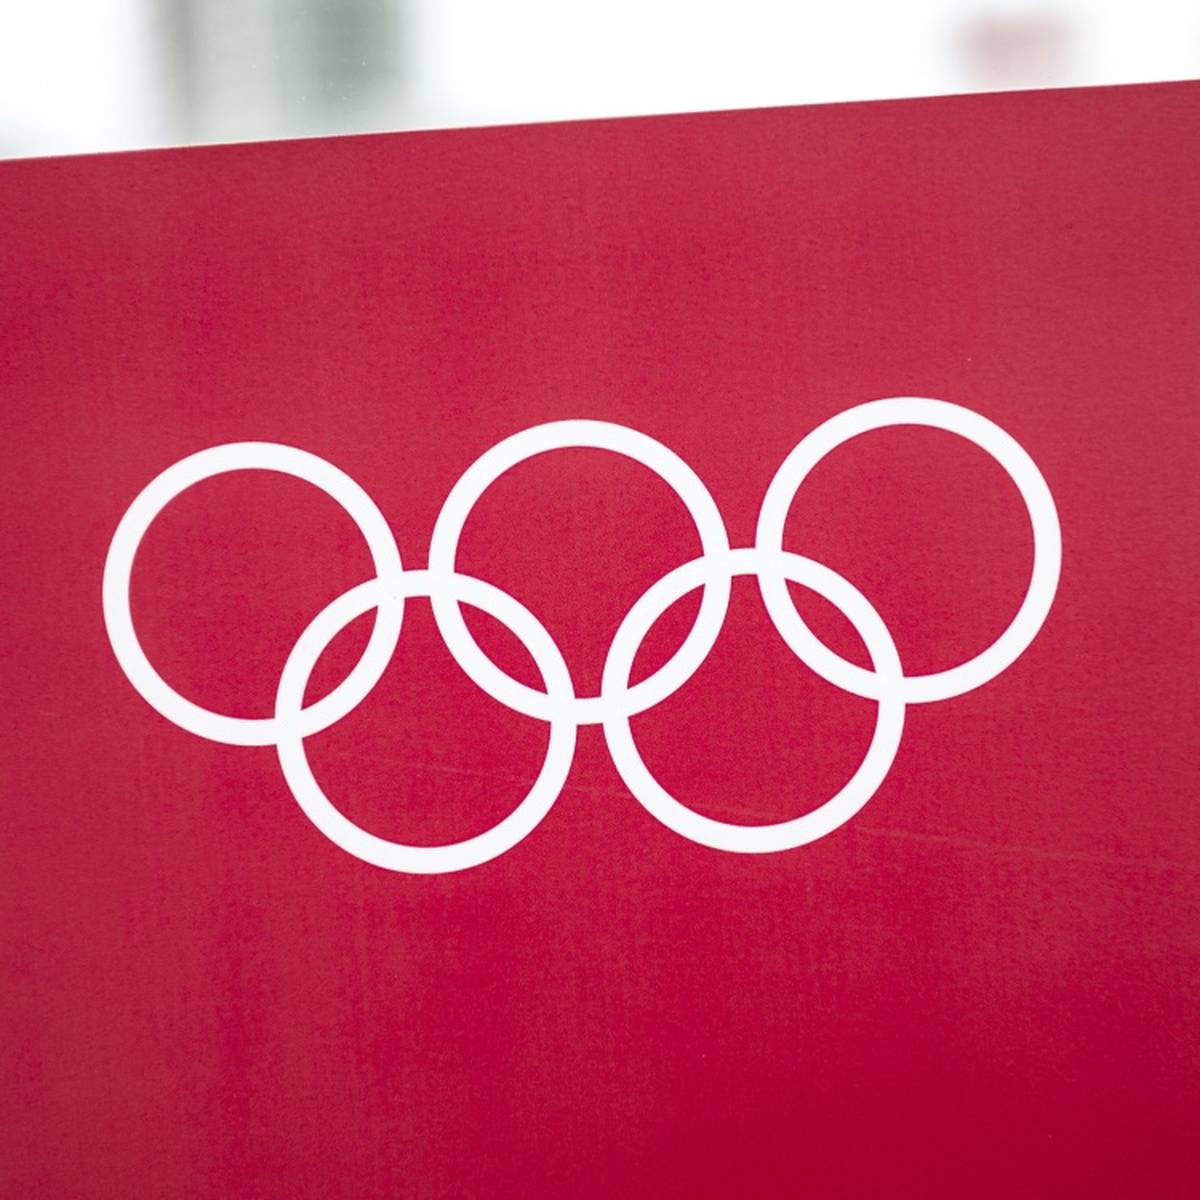 Die Region der französischen Südalpen will sich als Ausrichter für die Olympischen Winterspiele 2034 oder 2038 bewerben.